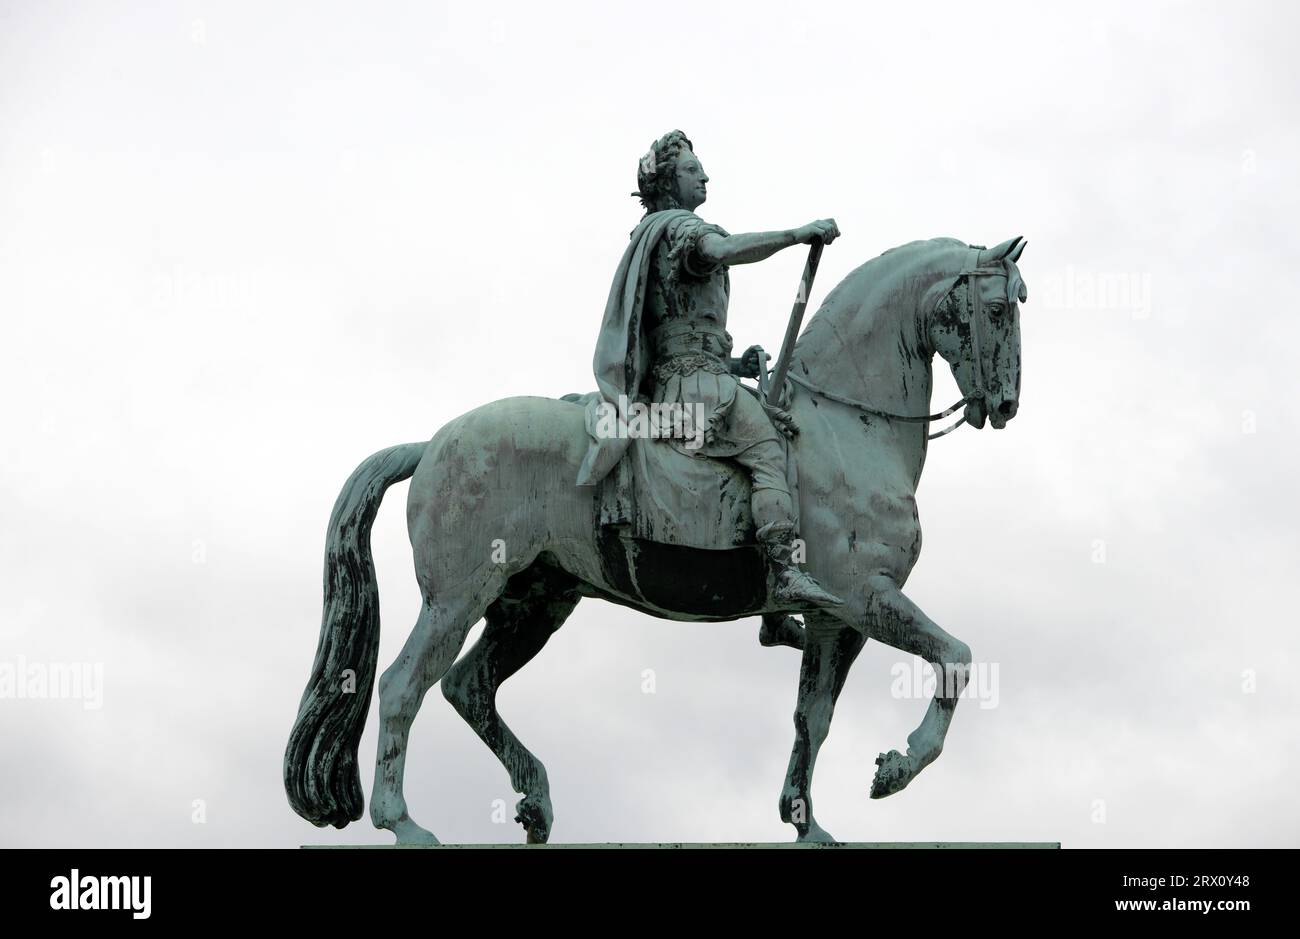 Rytterstatuen - Una statua equestre di bronzo del re Frederik V montata su una base di marmo e completata nel 1771. Castello di Amalienborg, Copenaghen, Danimarca. Foto Stock